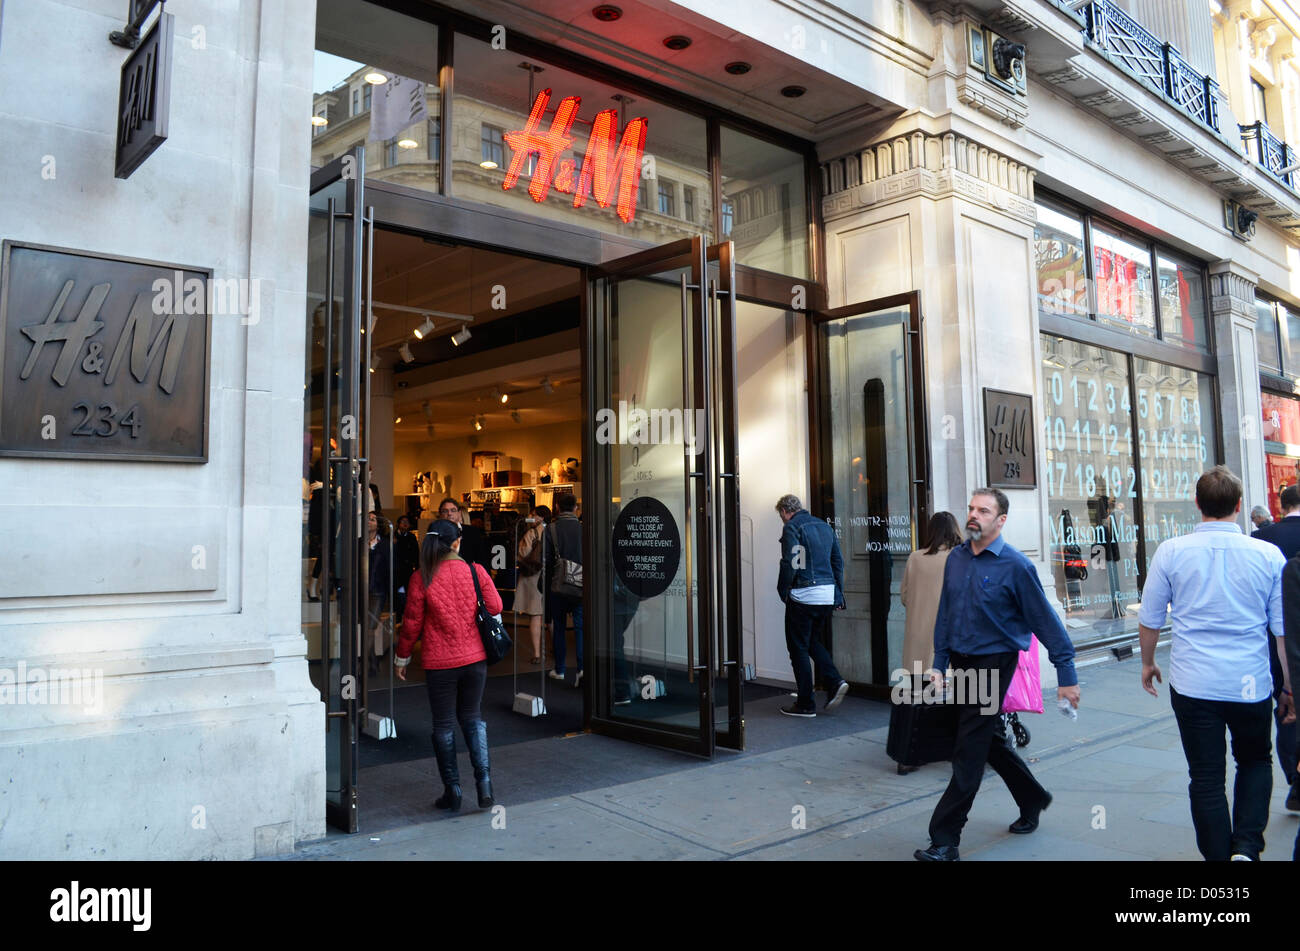 H&m store front Banque de photographies et d'images à haute résolution -  Alamy